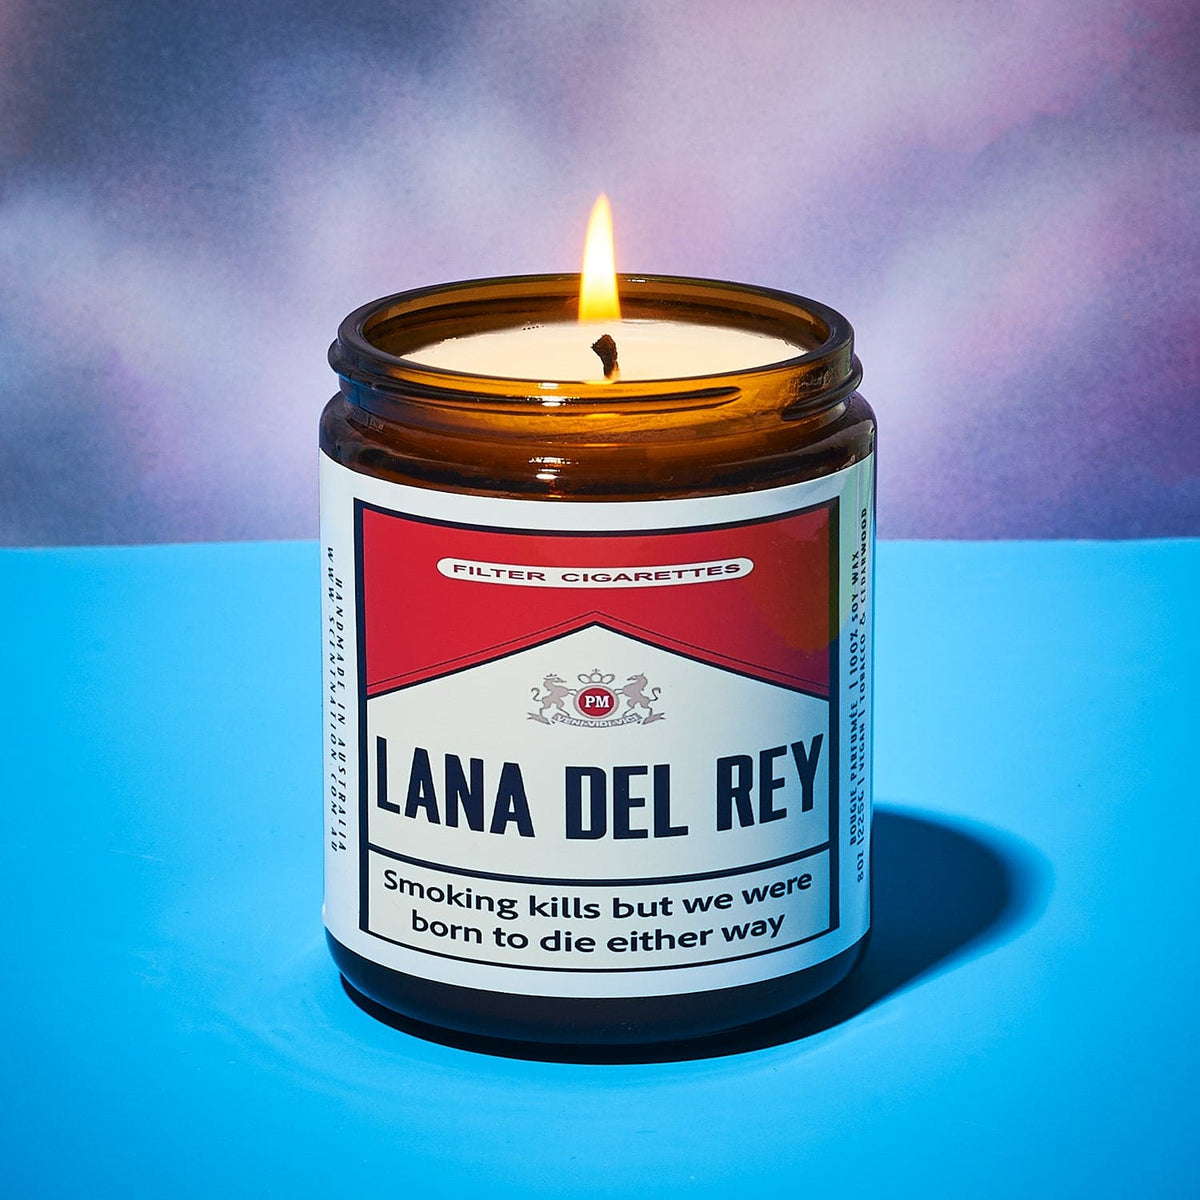 Lana Del Rey Cigarette Candle - Fun Ray Marlboro